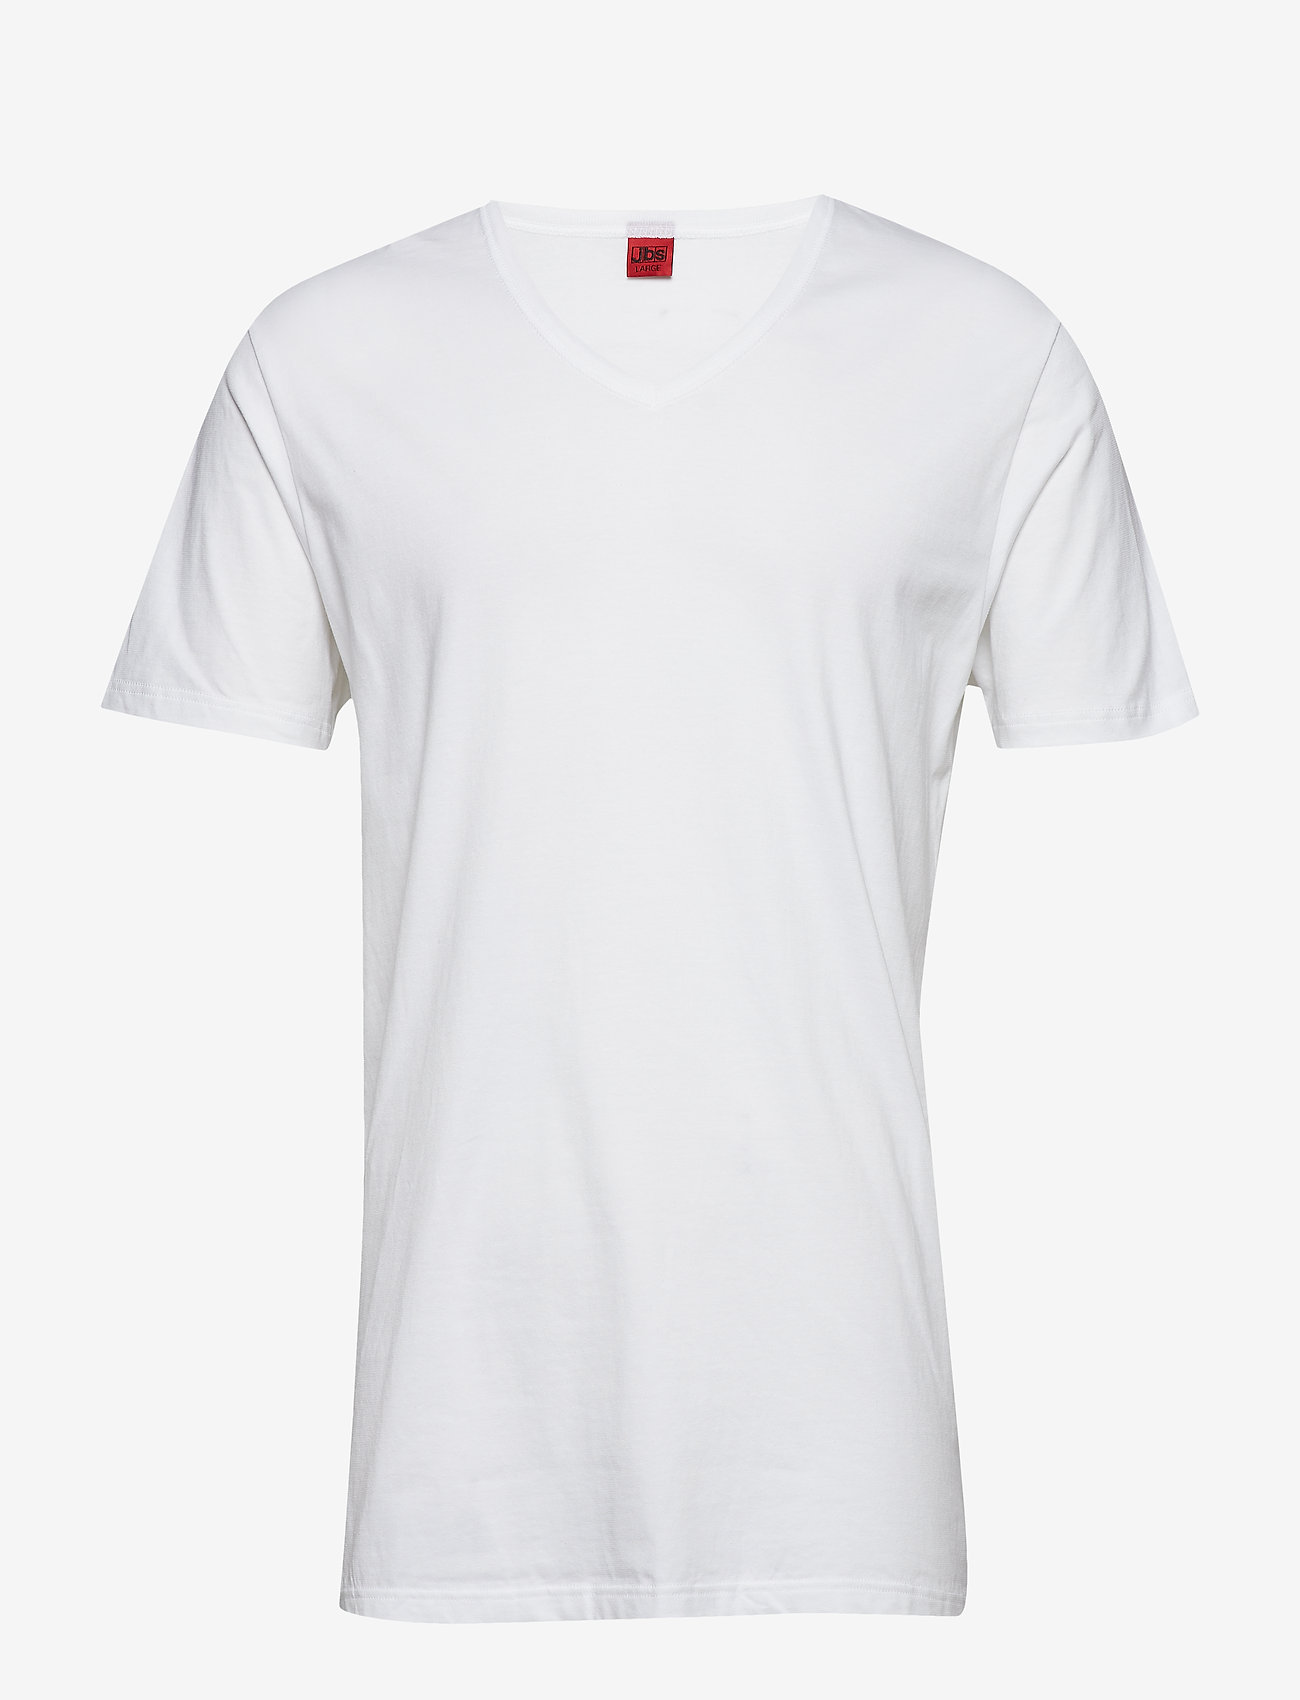 JBS - Basic v-neck tee - laisvalaikio marškinėliai - white - 0